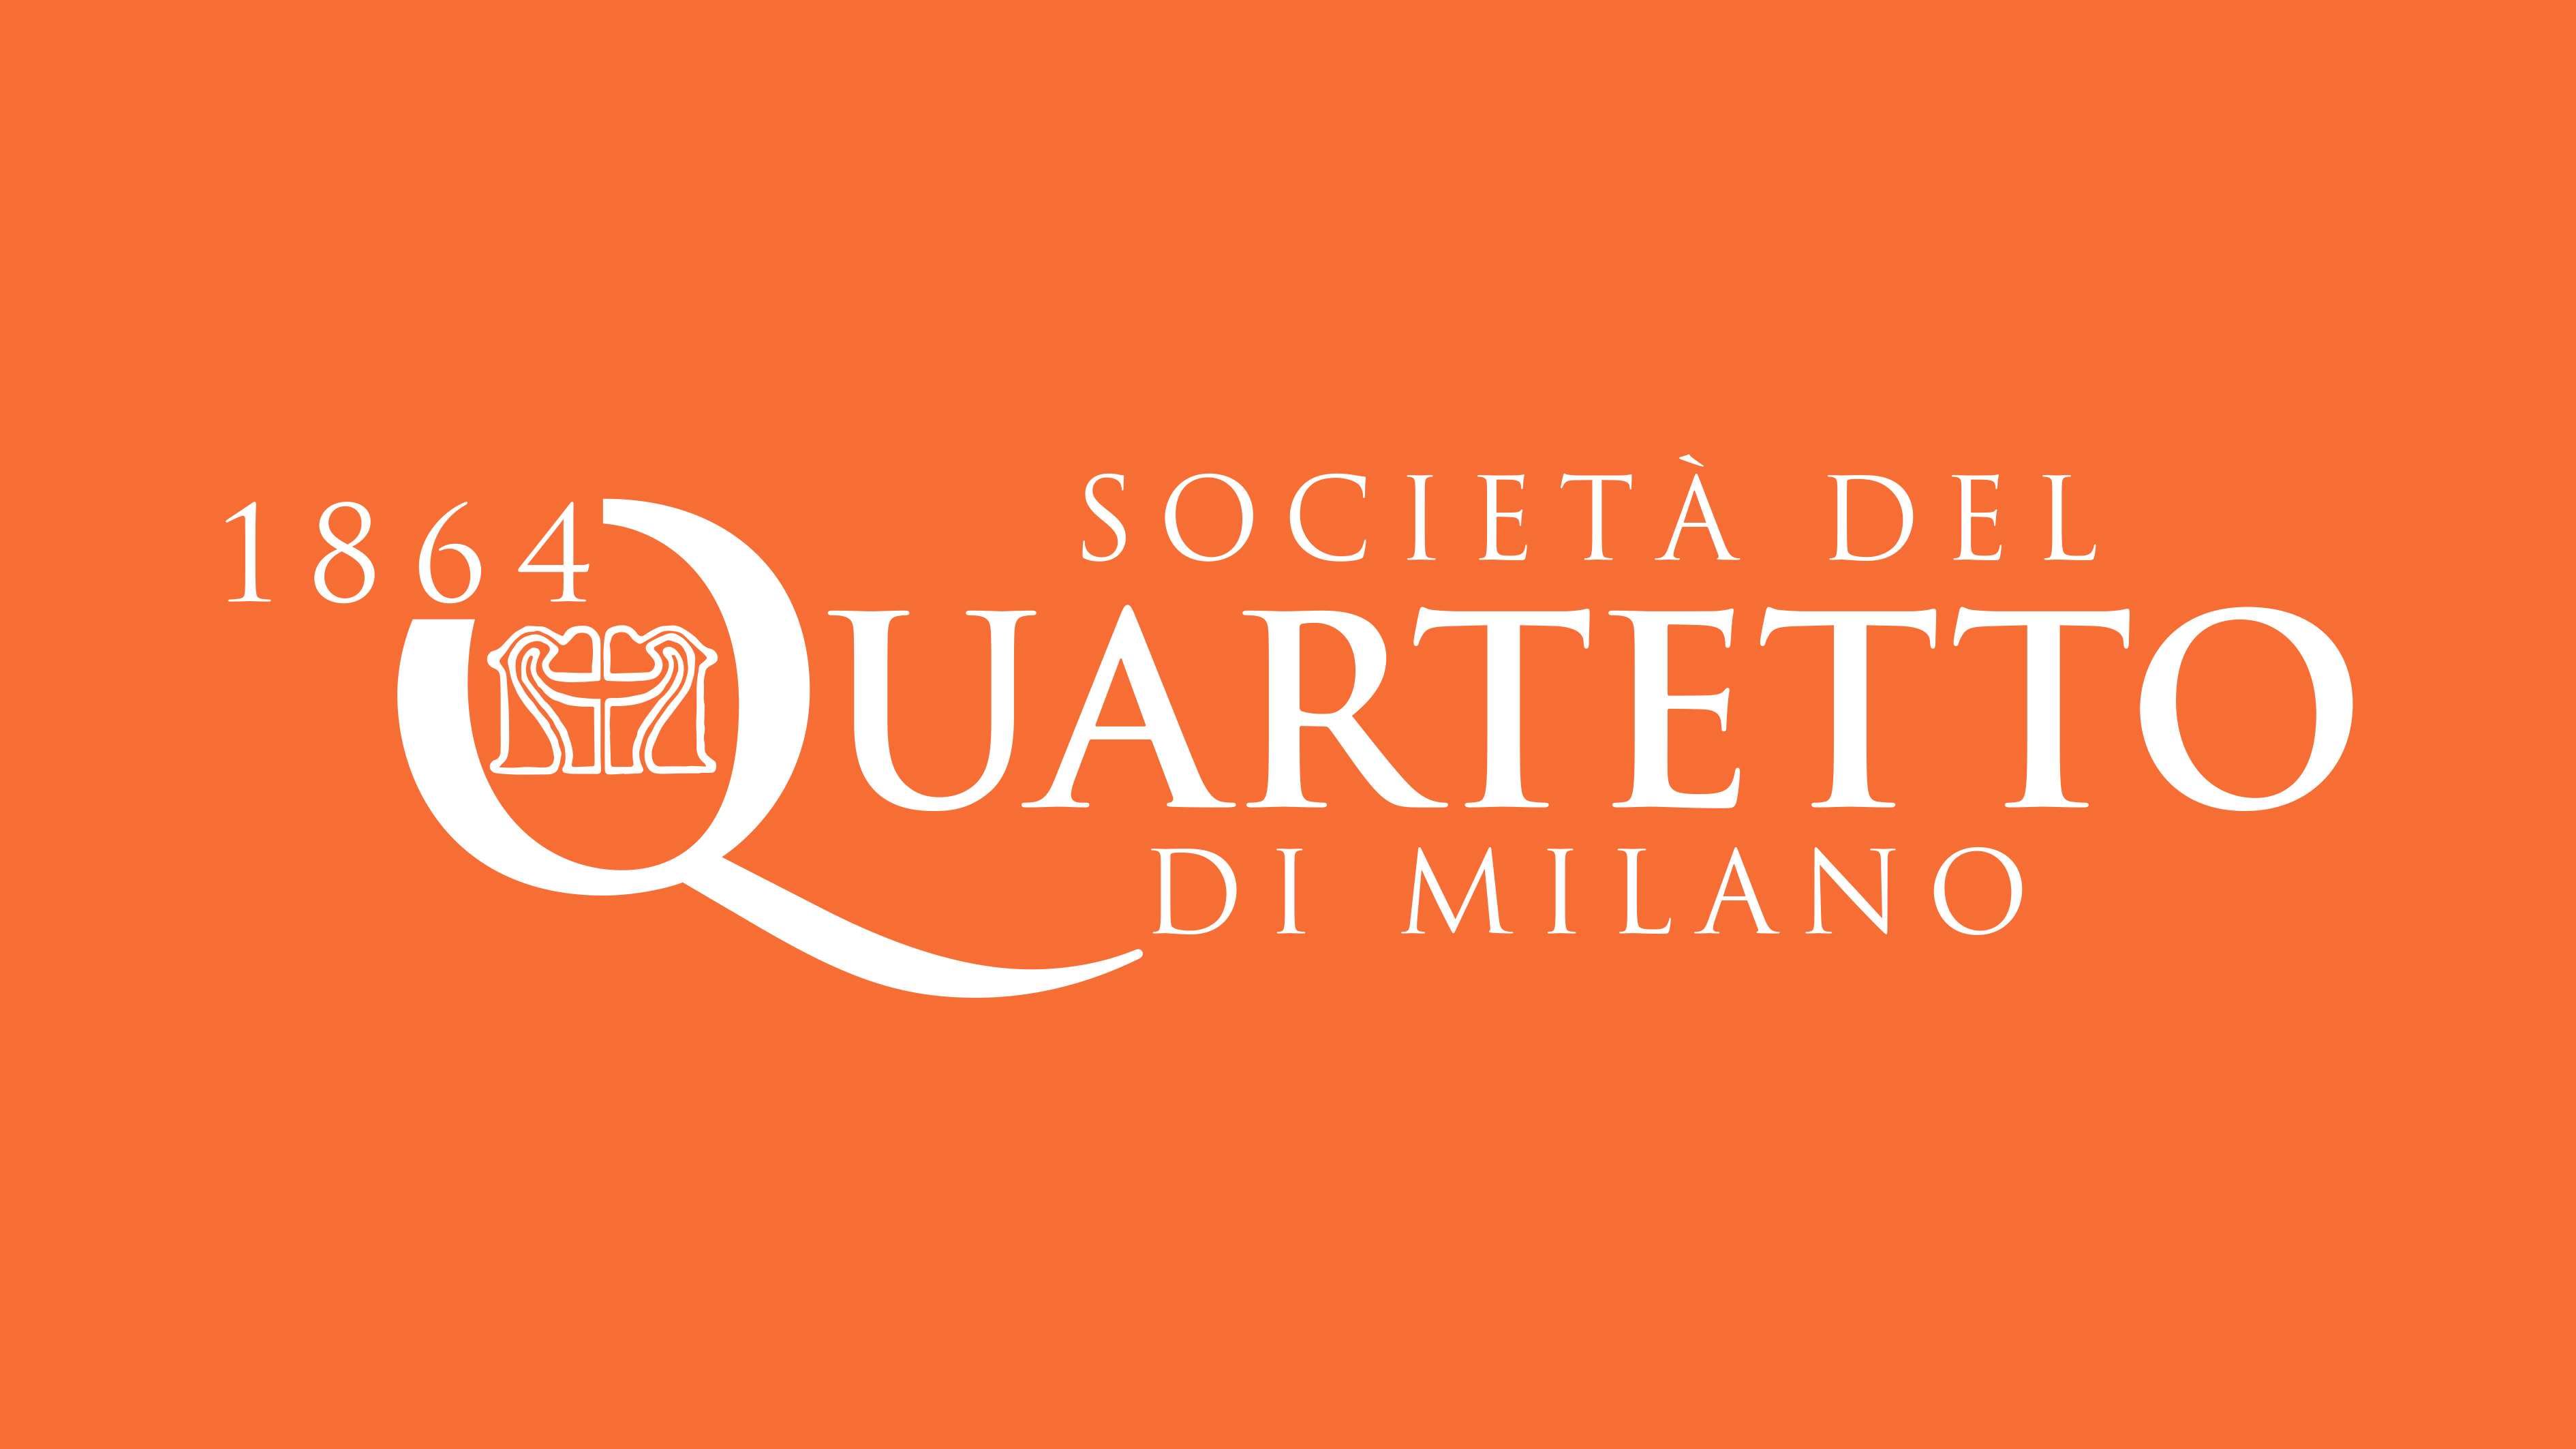 Le Avventure di Pinocchio per Tutti-Società del Quartetto di Milano